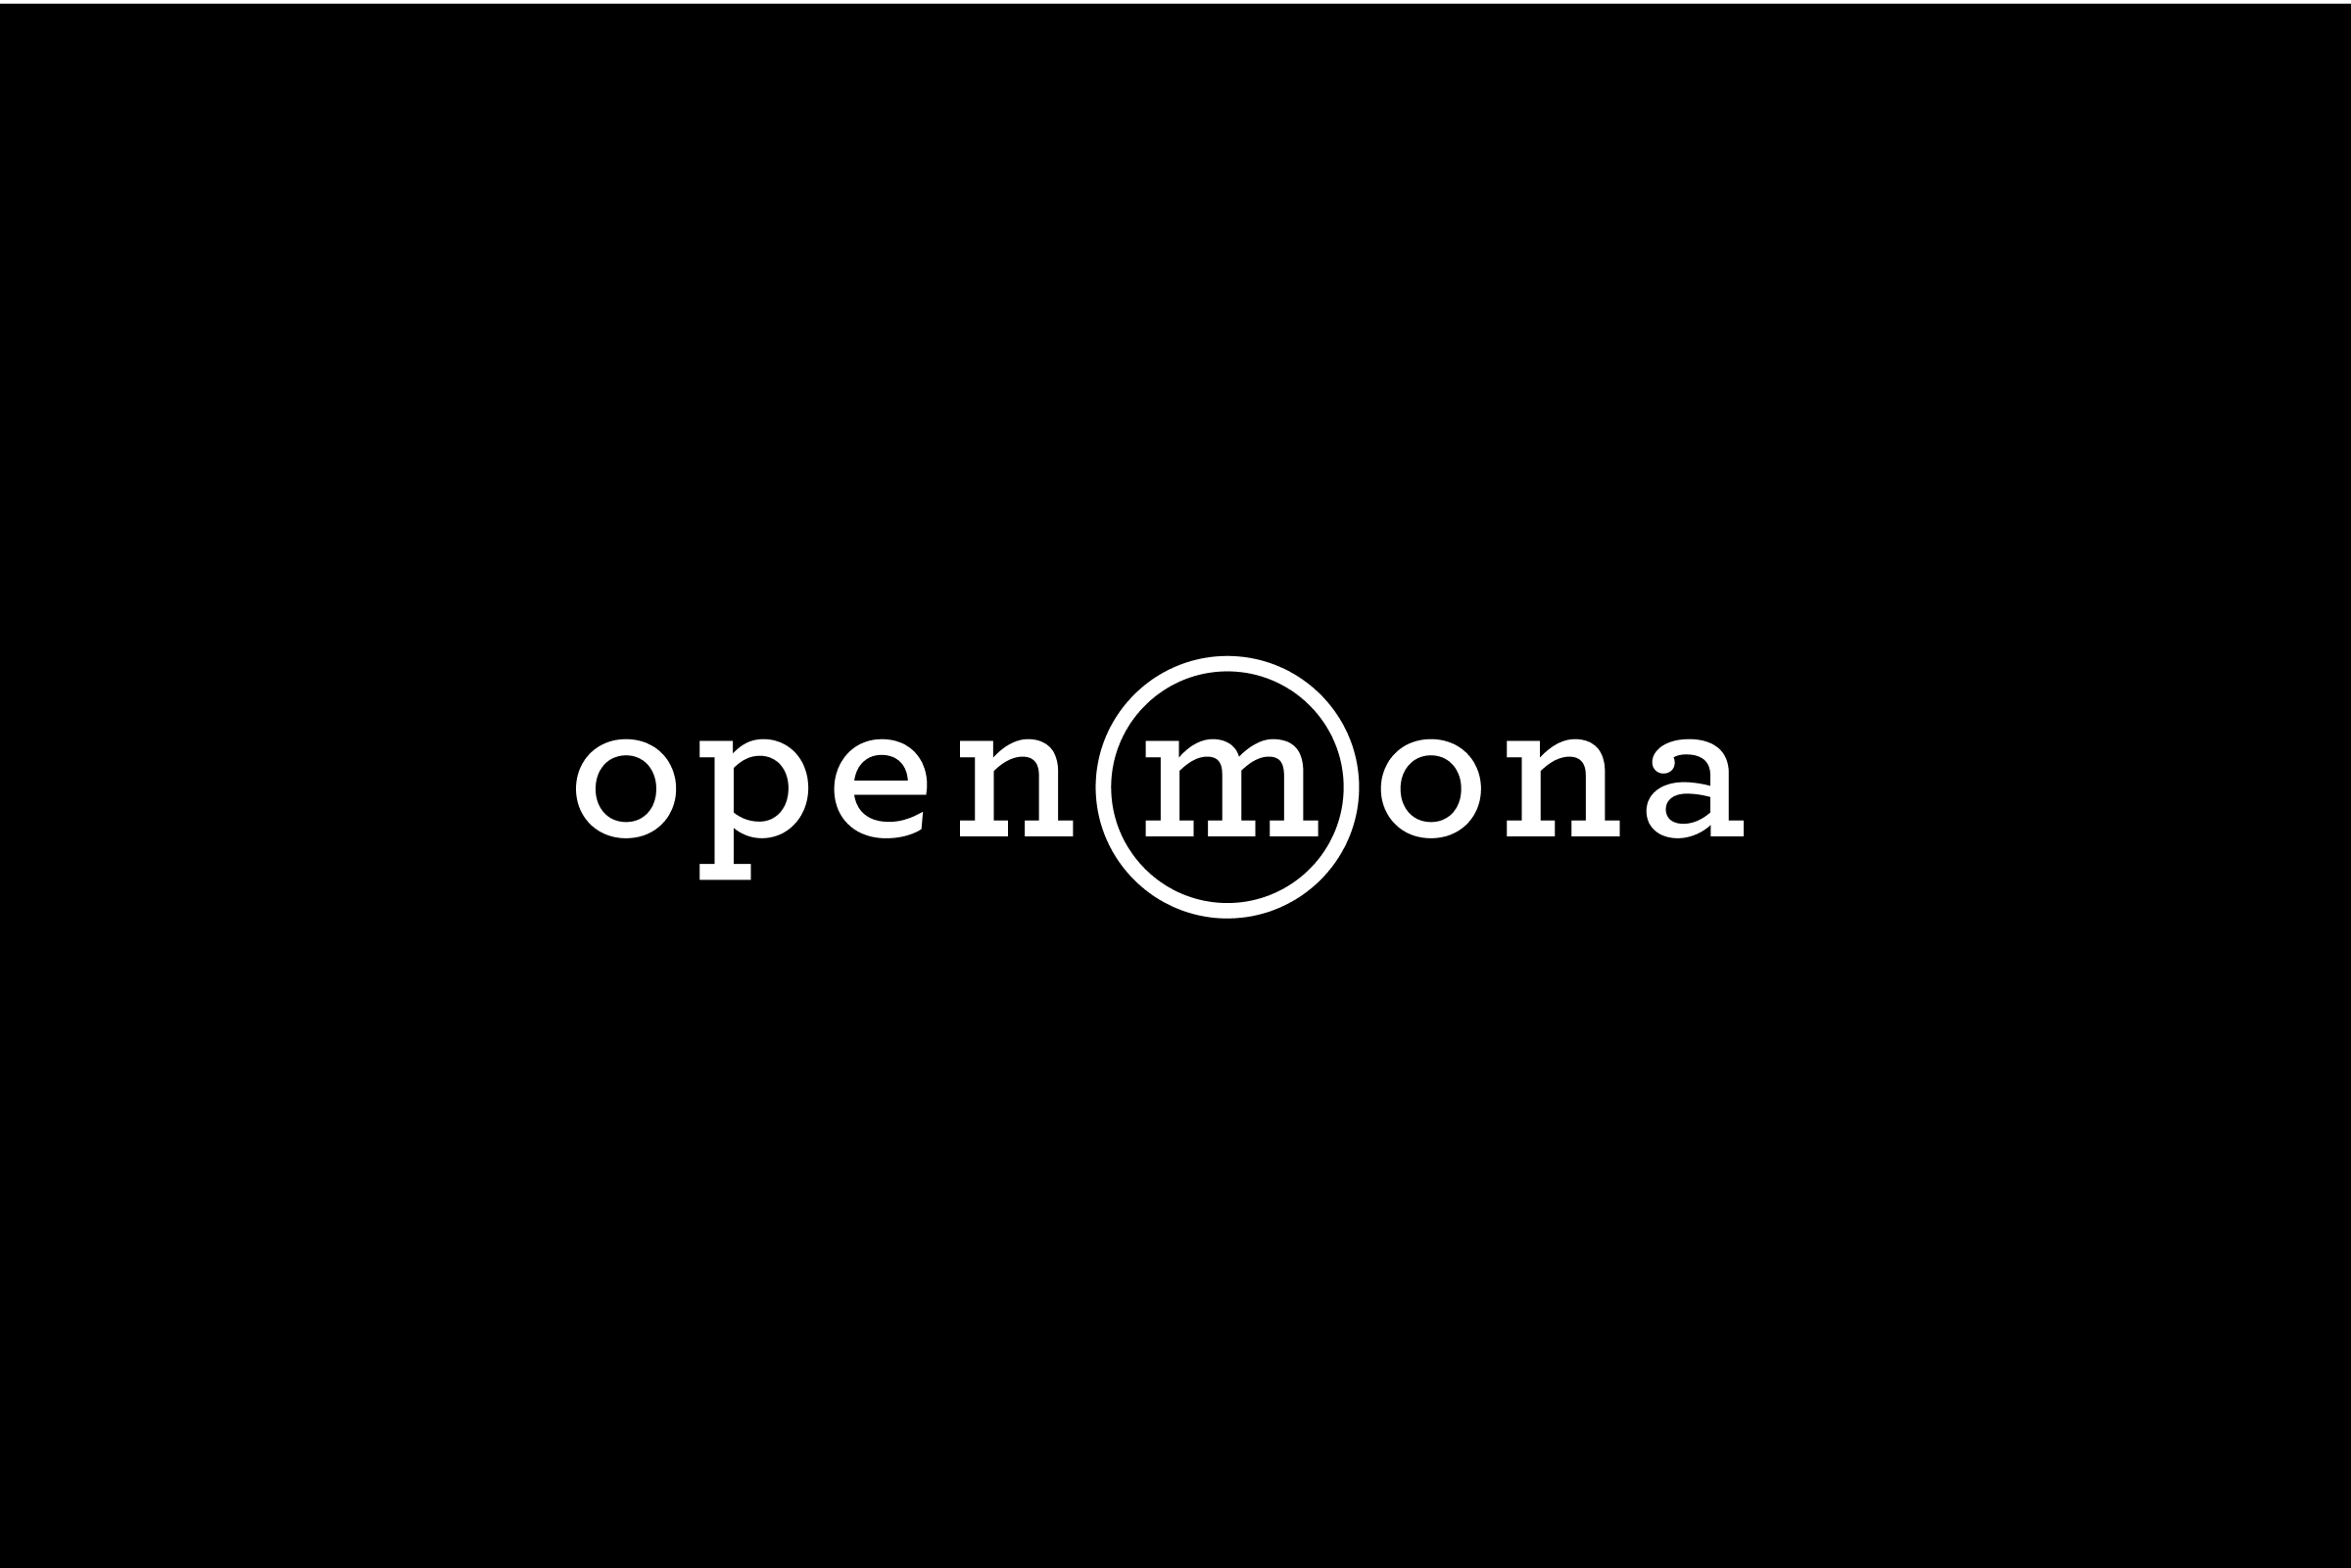 simon-p-coyle-branding-logo-design-2013-open-mona